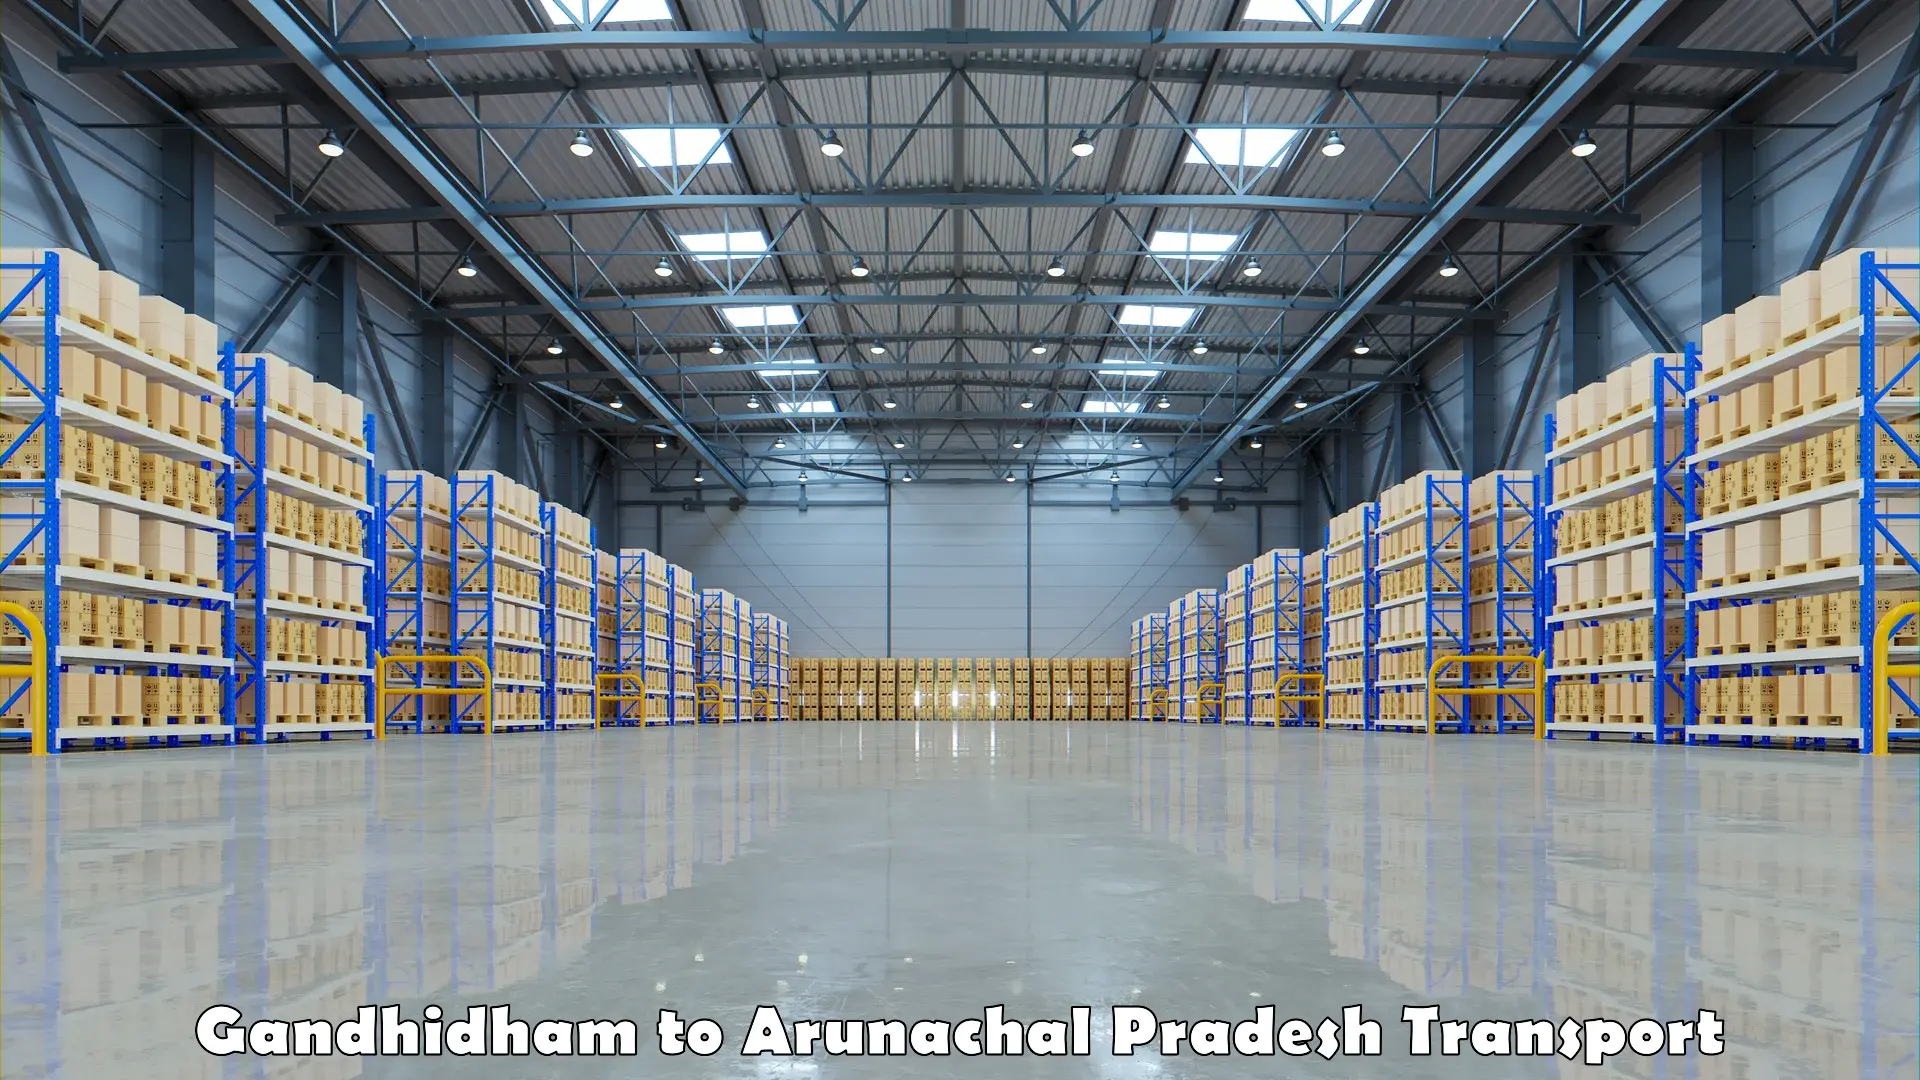 Nationwide transport services Gandhidham to Arunachal Pradesh